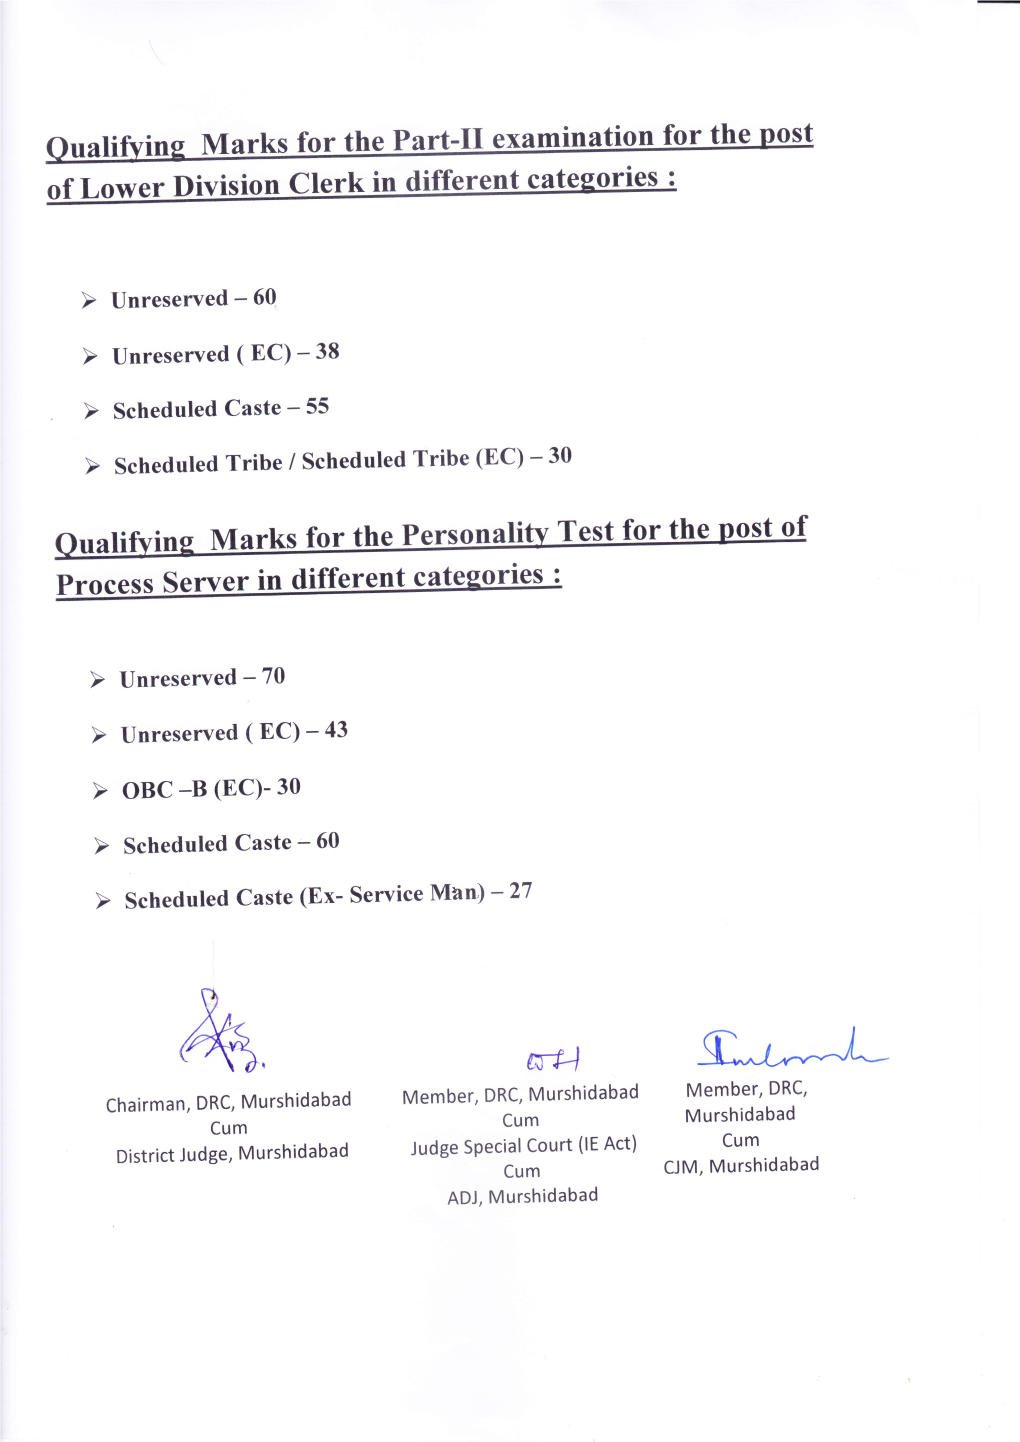 Uali Rn Marks for Ttre Part-Tt Exa of Lower Division Clerk in Different